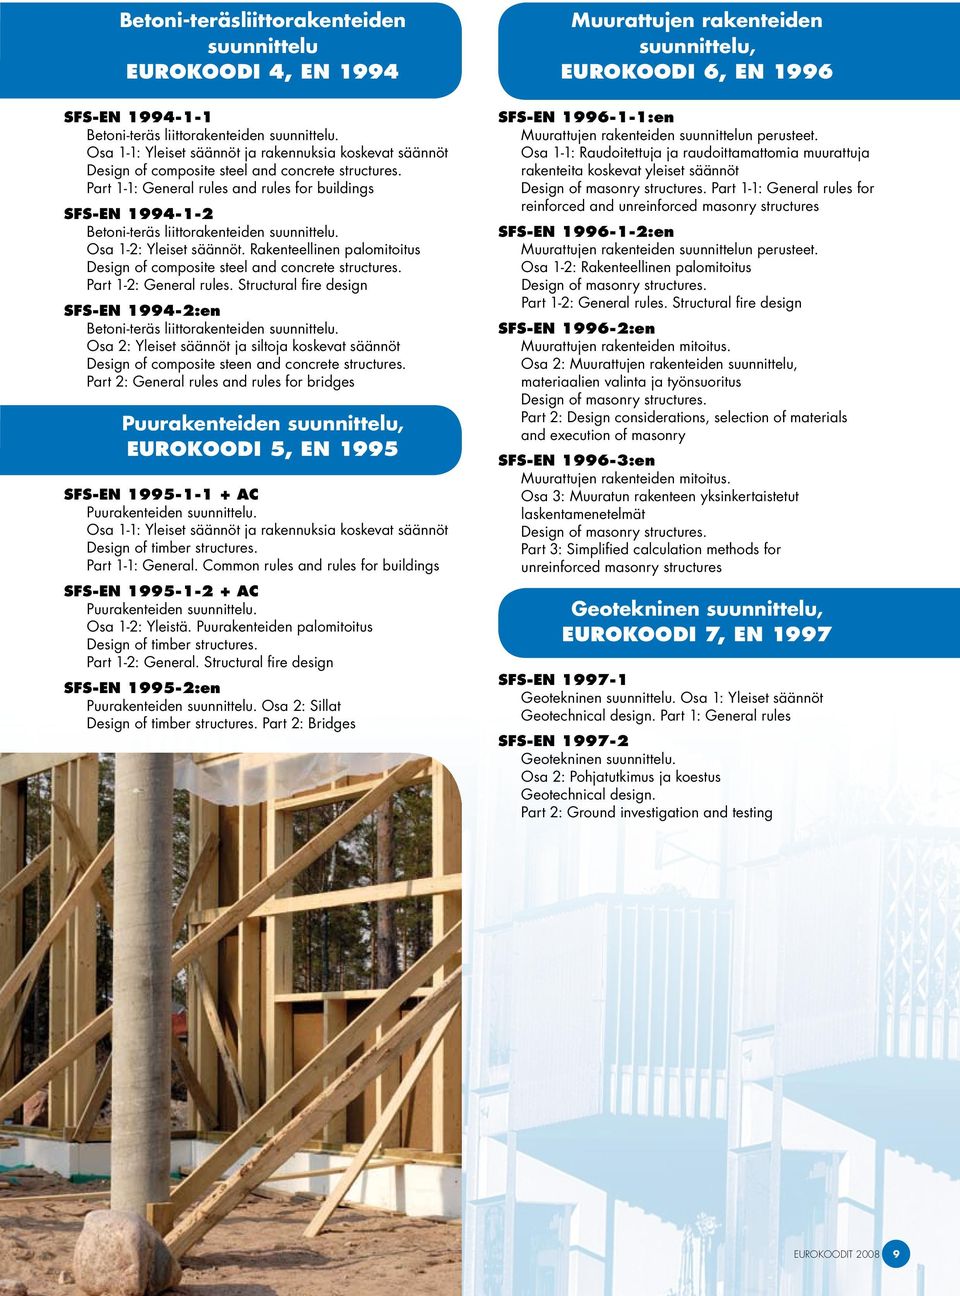 Part 1-1: General rules and rules for buildings SFS-EN 1994-1-2 Betoni-teräs liittorakenteiden suunnittelu. Osa 1-2: Yleiset säännöt.